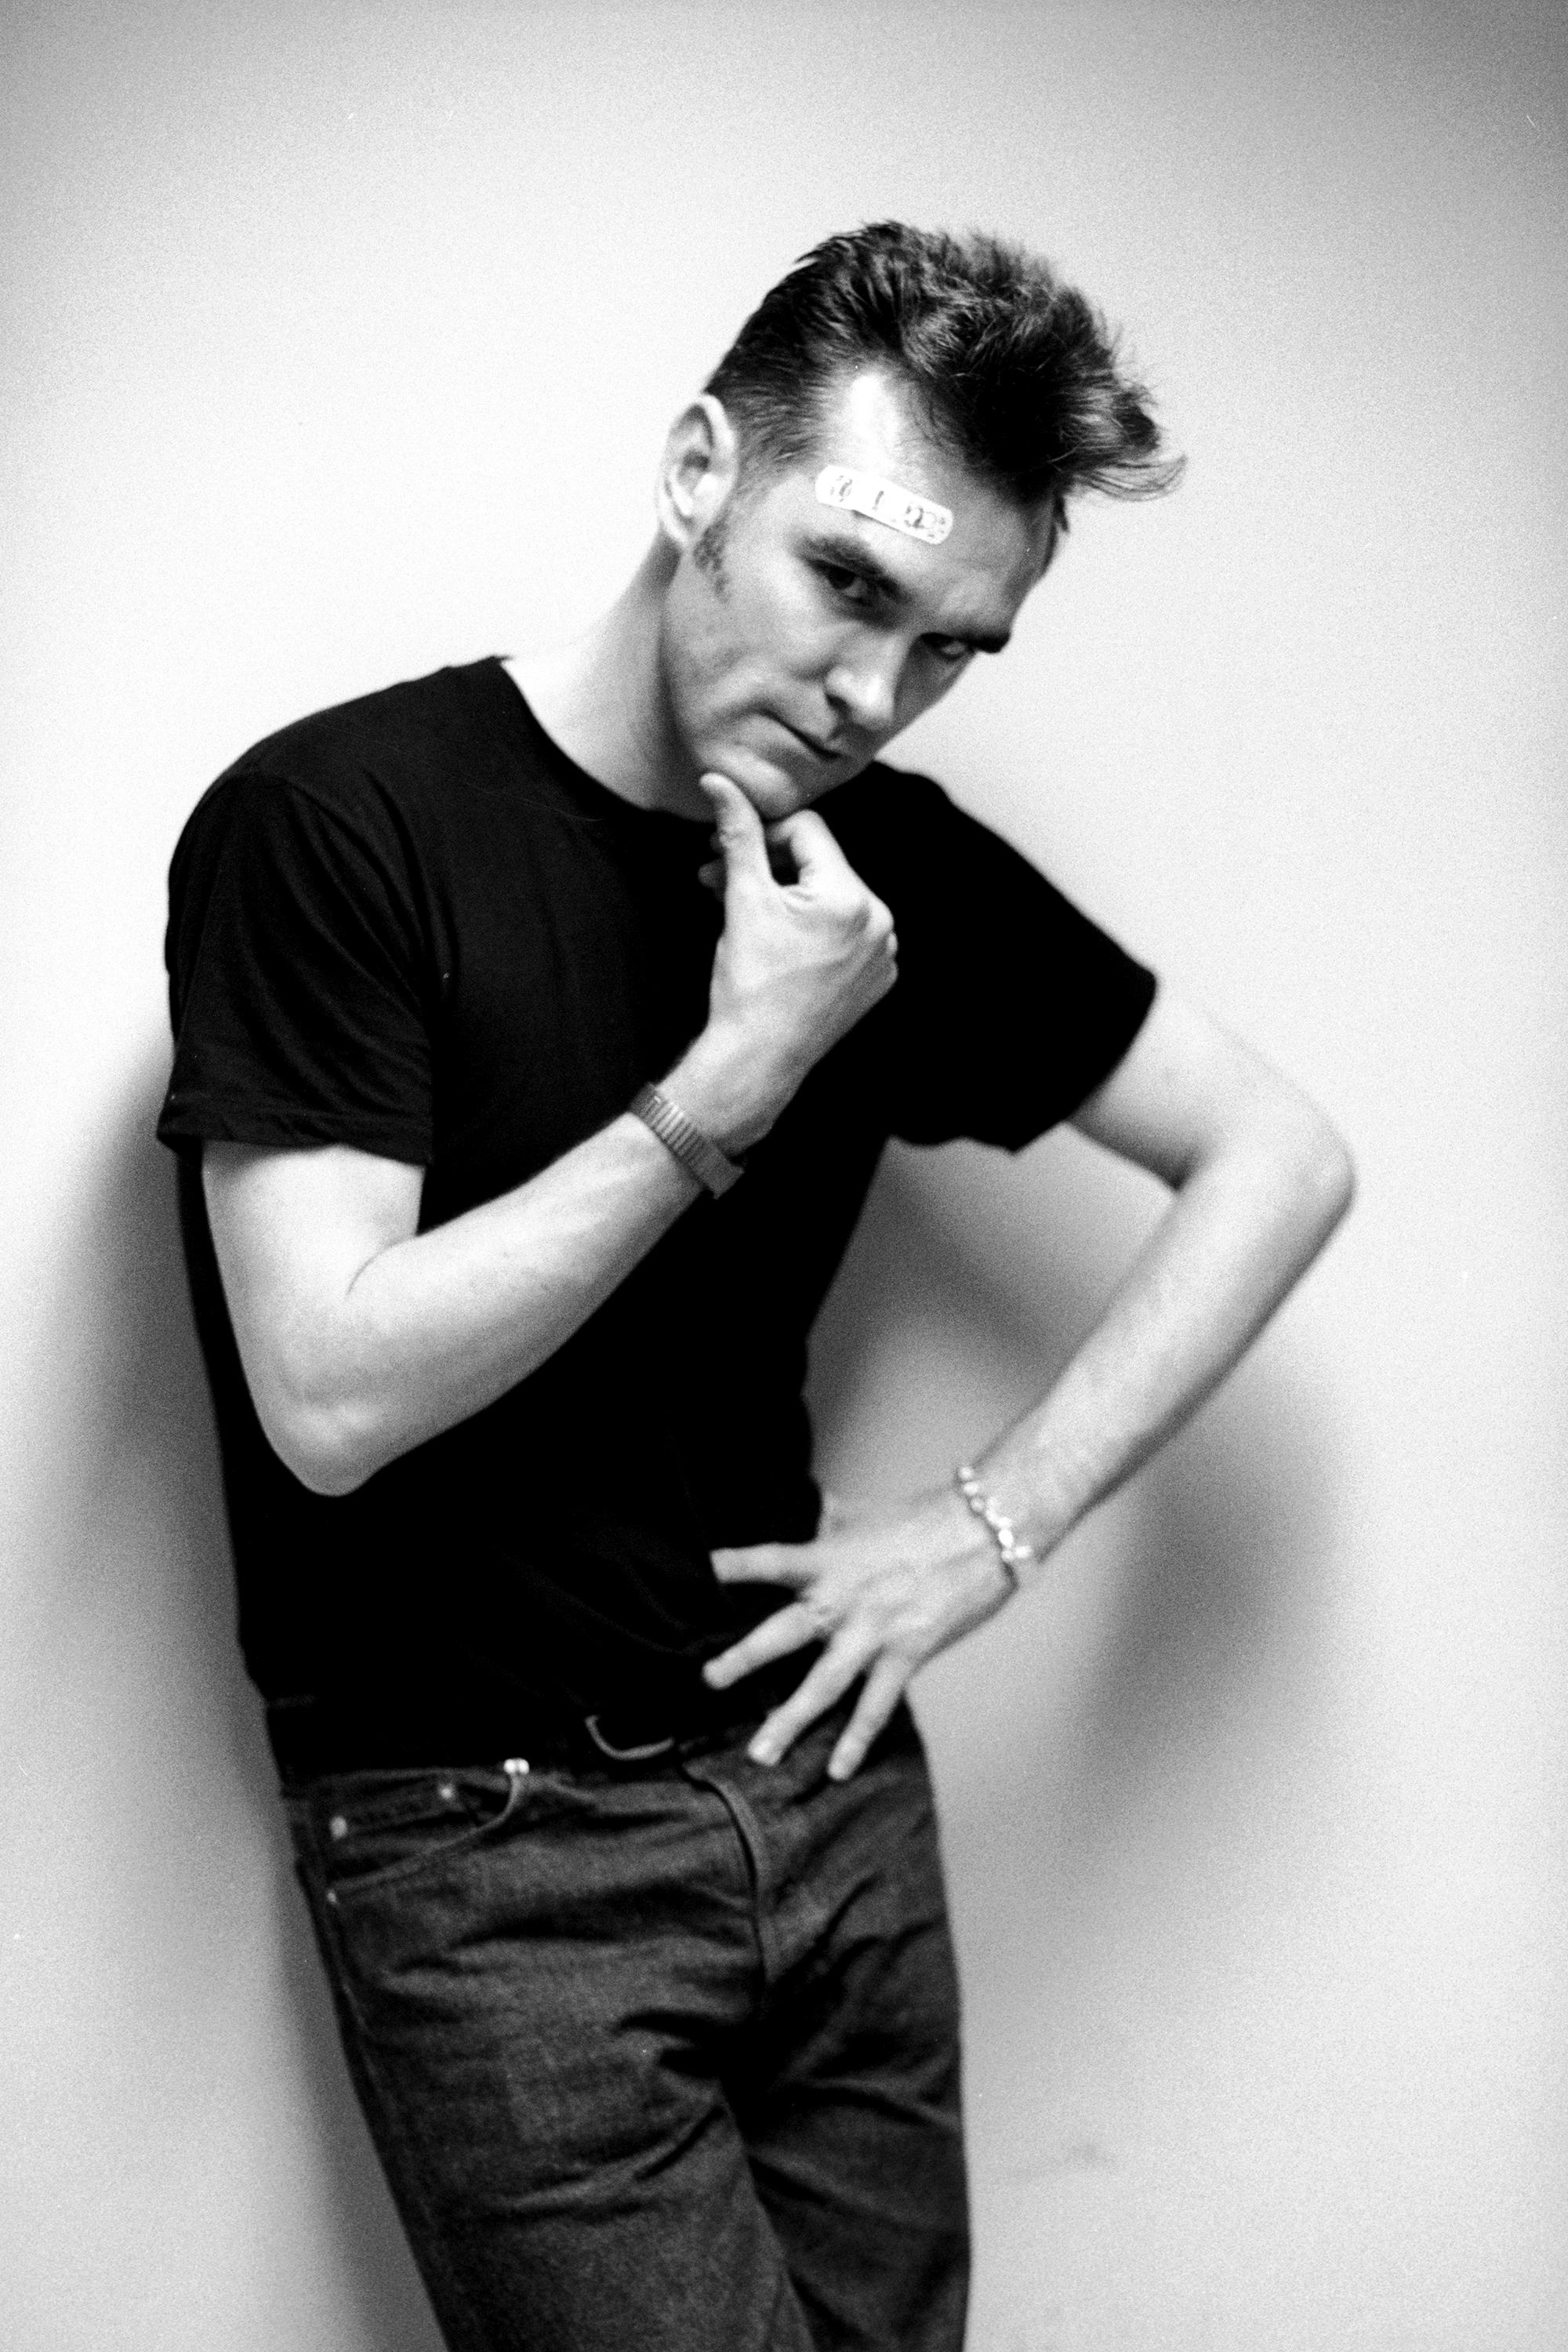 Signierter Silbergelatine-Druck in limitierter Auflage von Morrissey, dem ehemaligen Frontmann der Rockband The Smiths, mit einem Pflaster auf der Stirn, 5. September 1991.

Dieser Morrissey-Druck von Kevin Cummins ist in den folgenden Größen